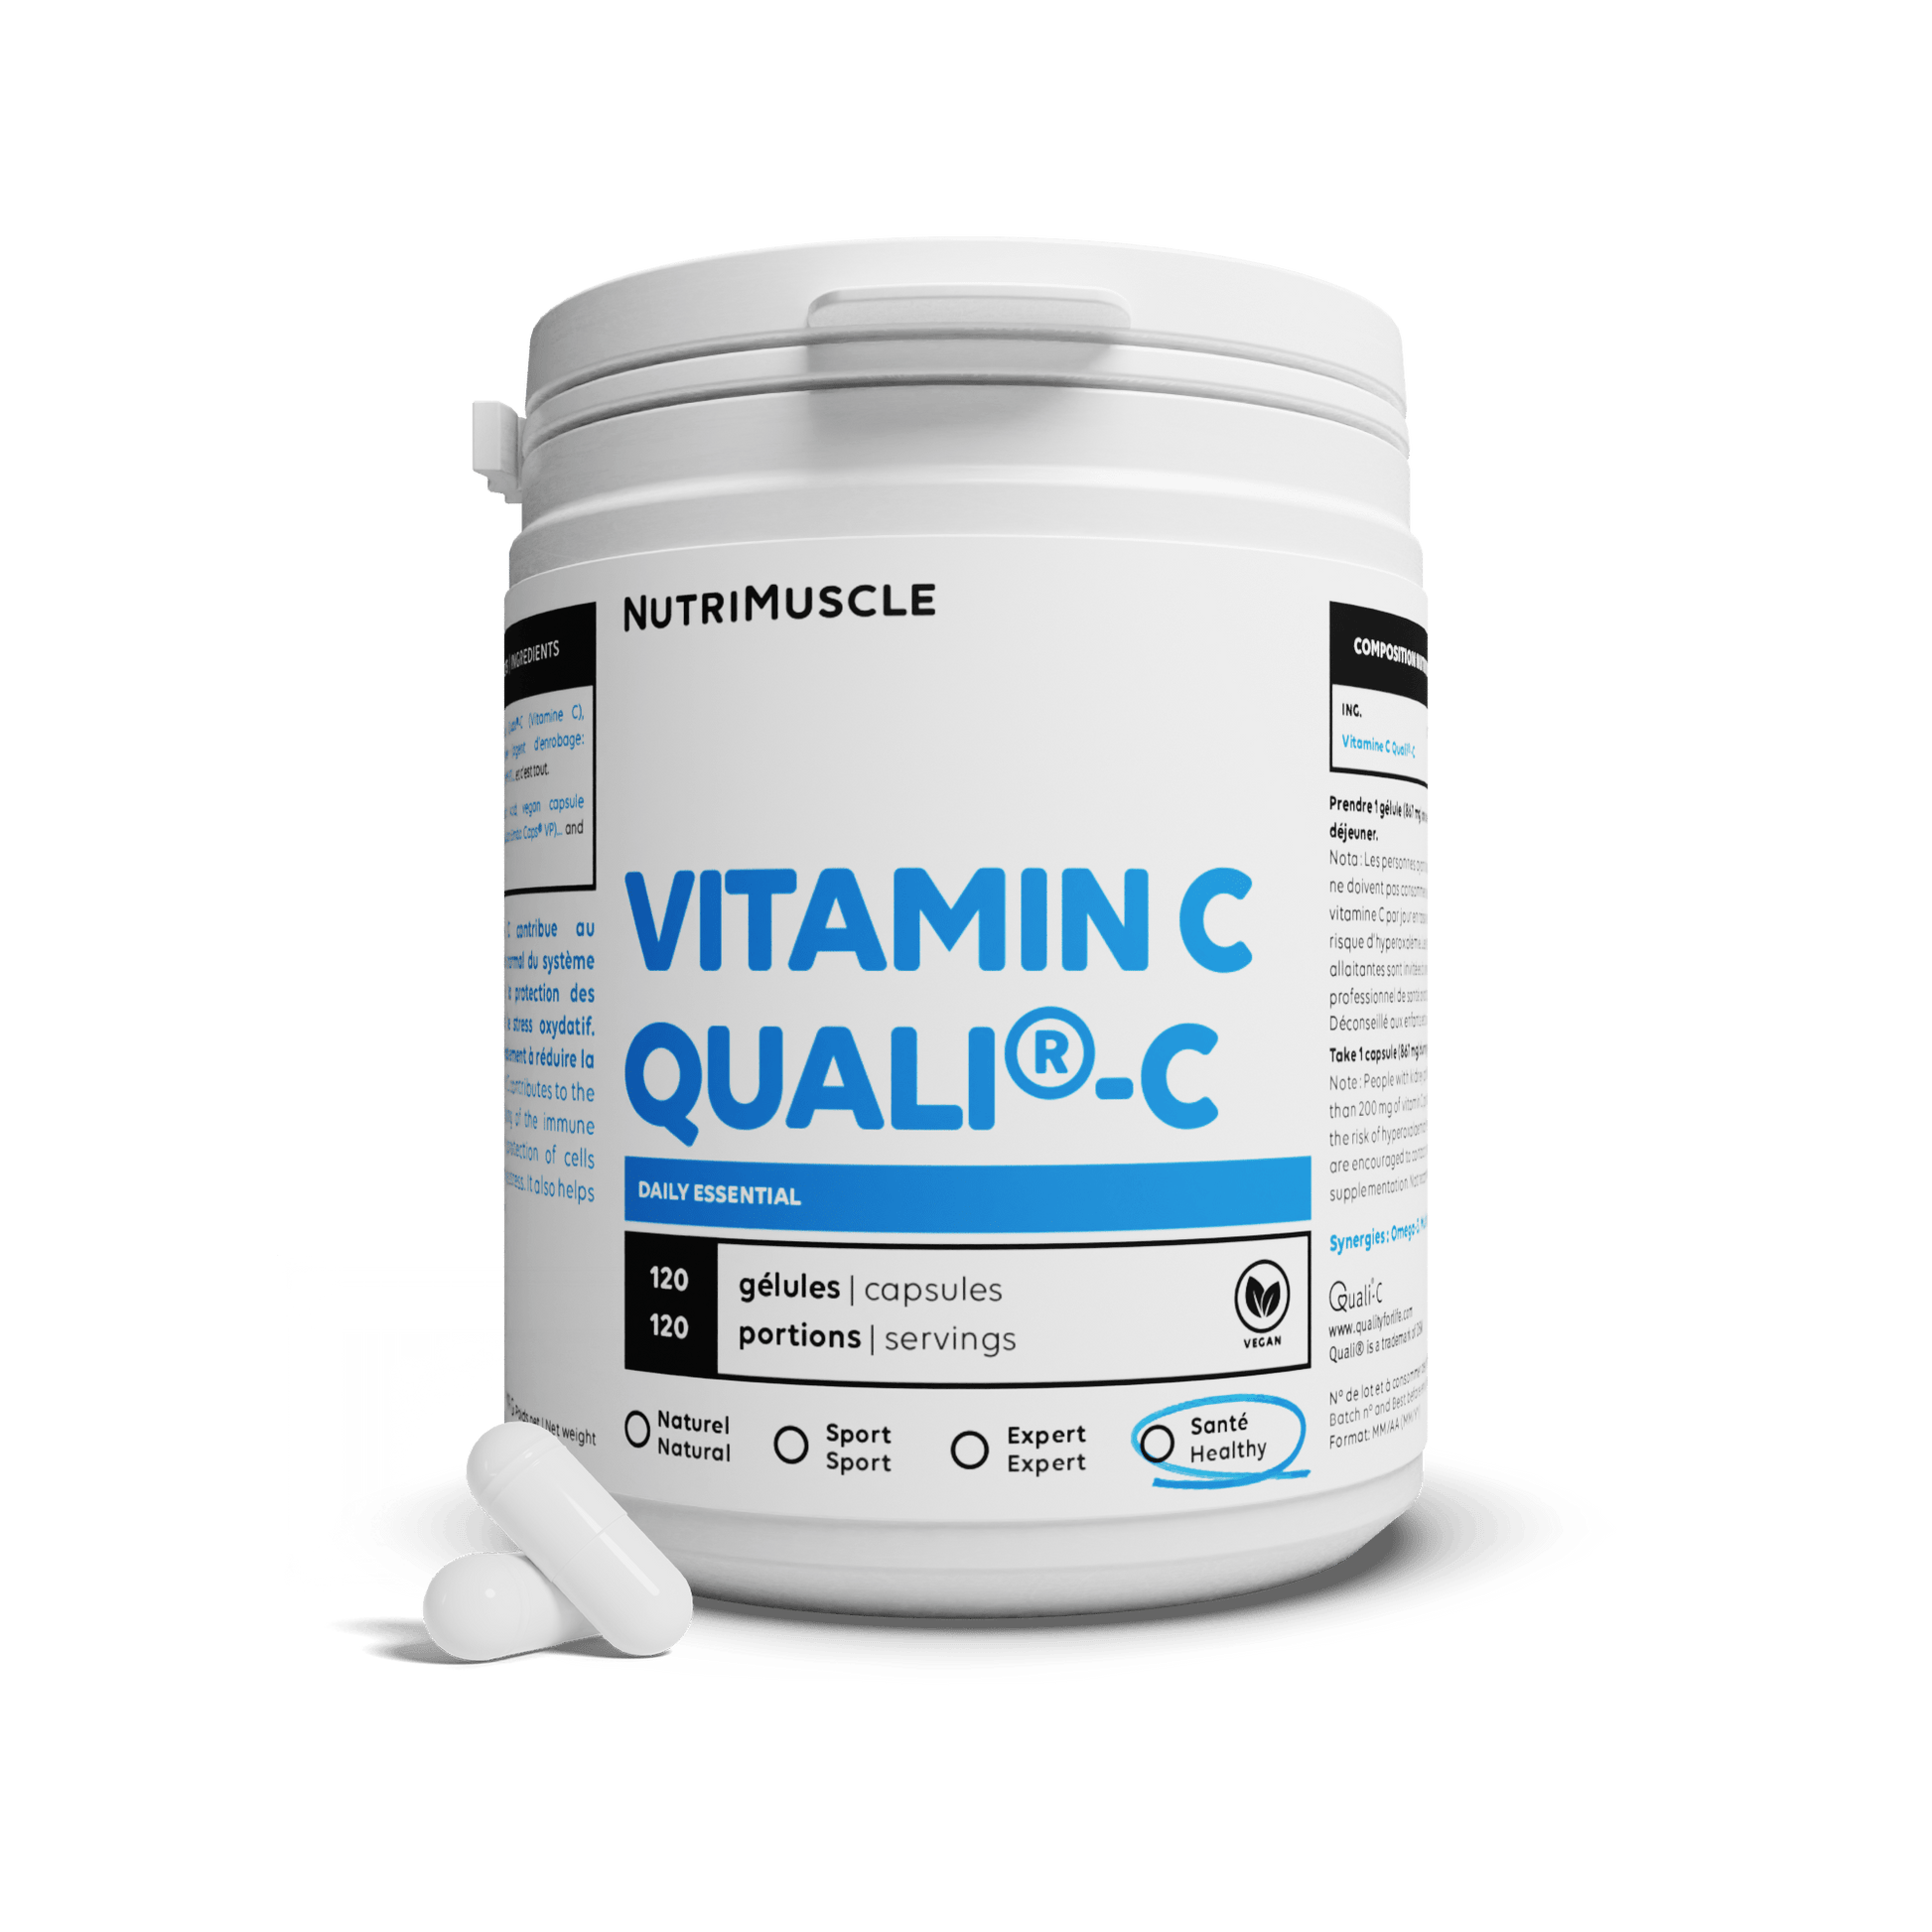 Nutrimuscle 120 gélules Vitamine C Quali®C en gélules